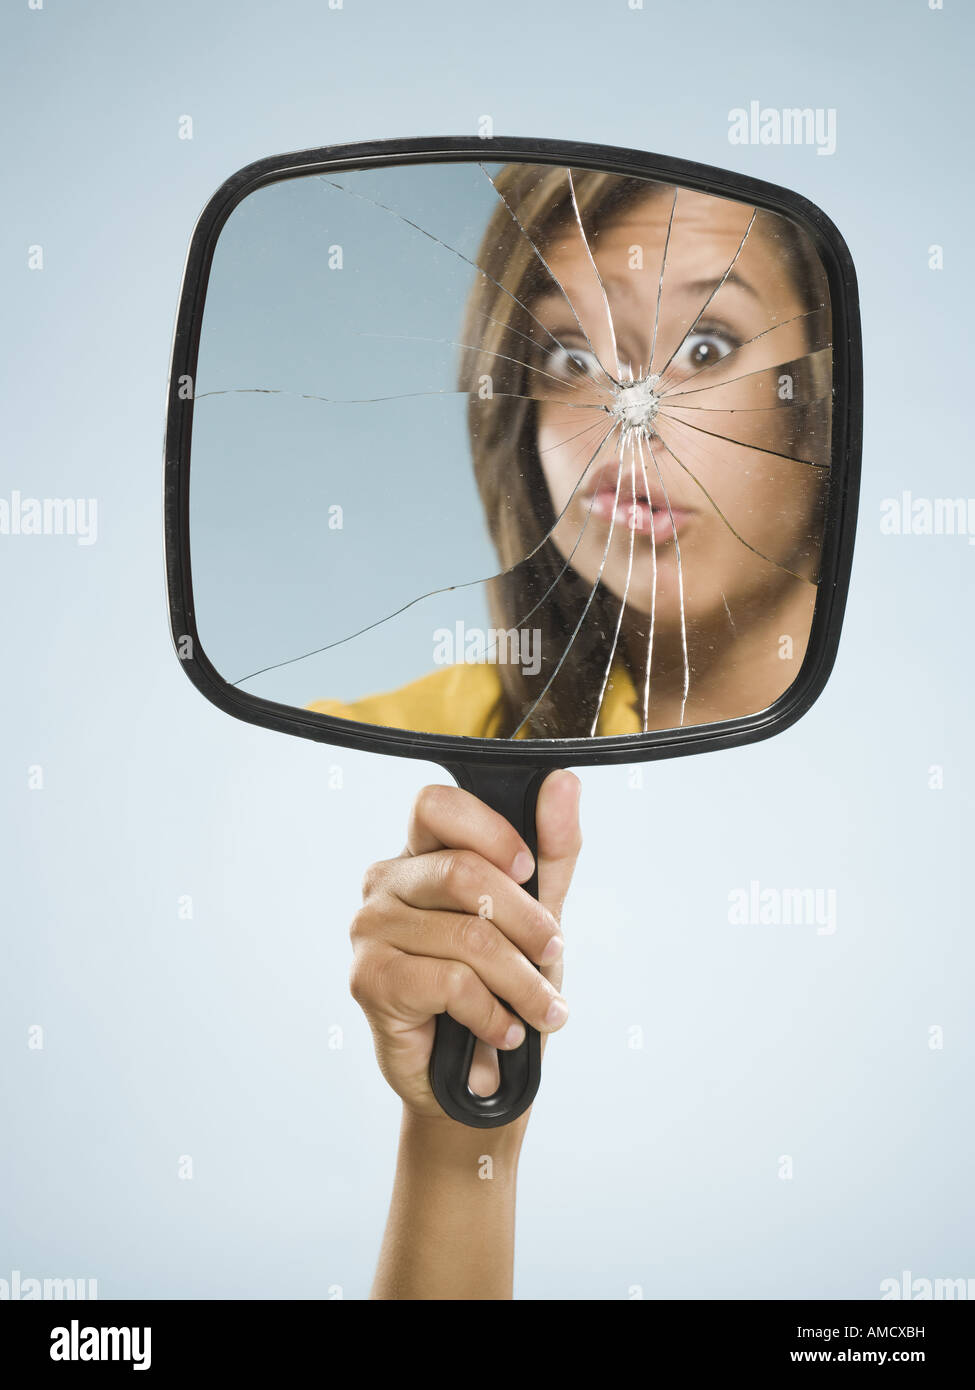 Reflet de femme en miroir brisé Photo Stock - Alamy